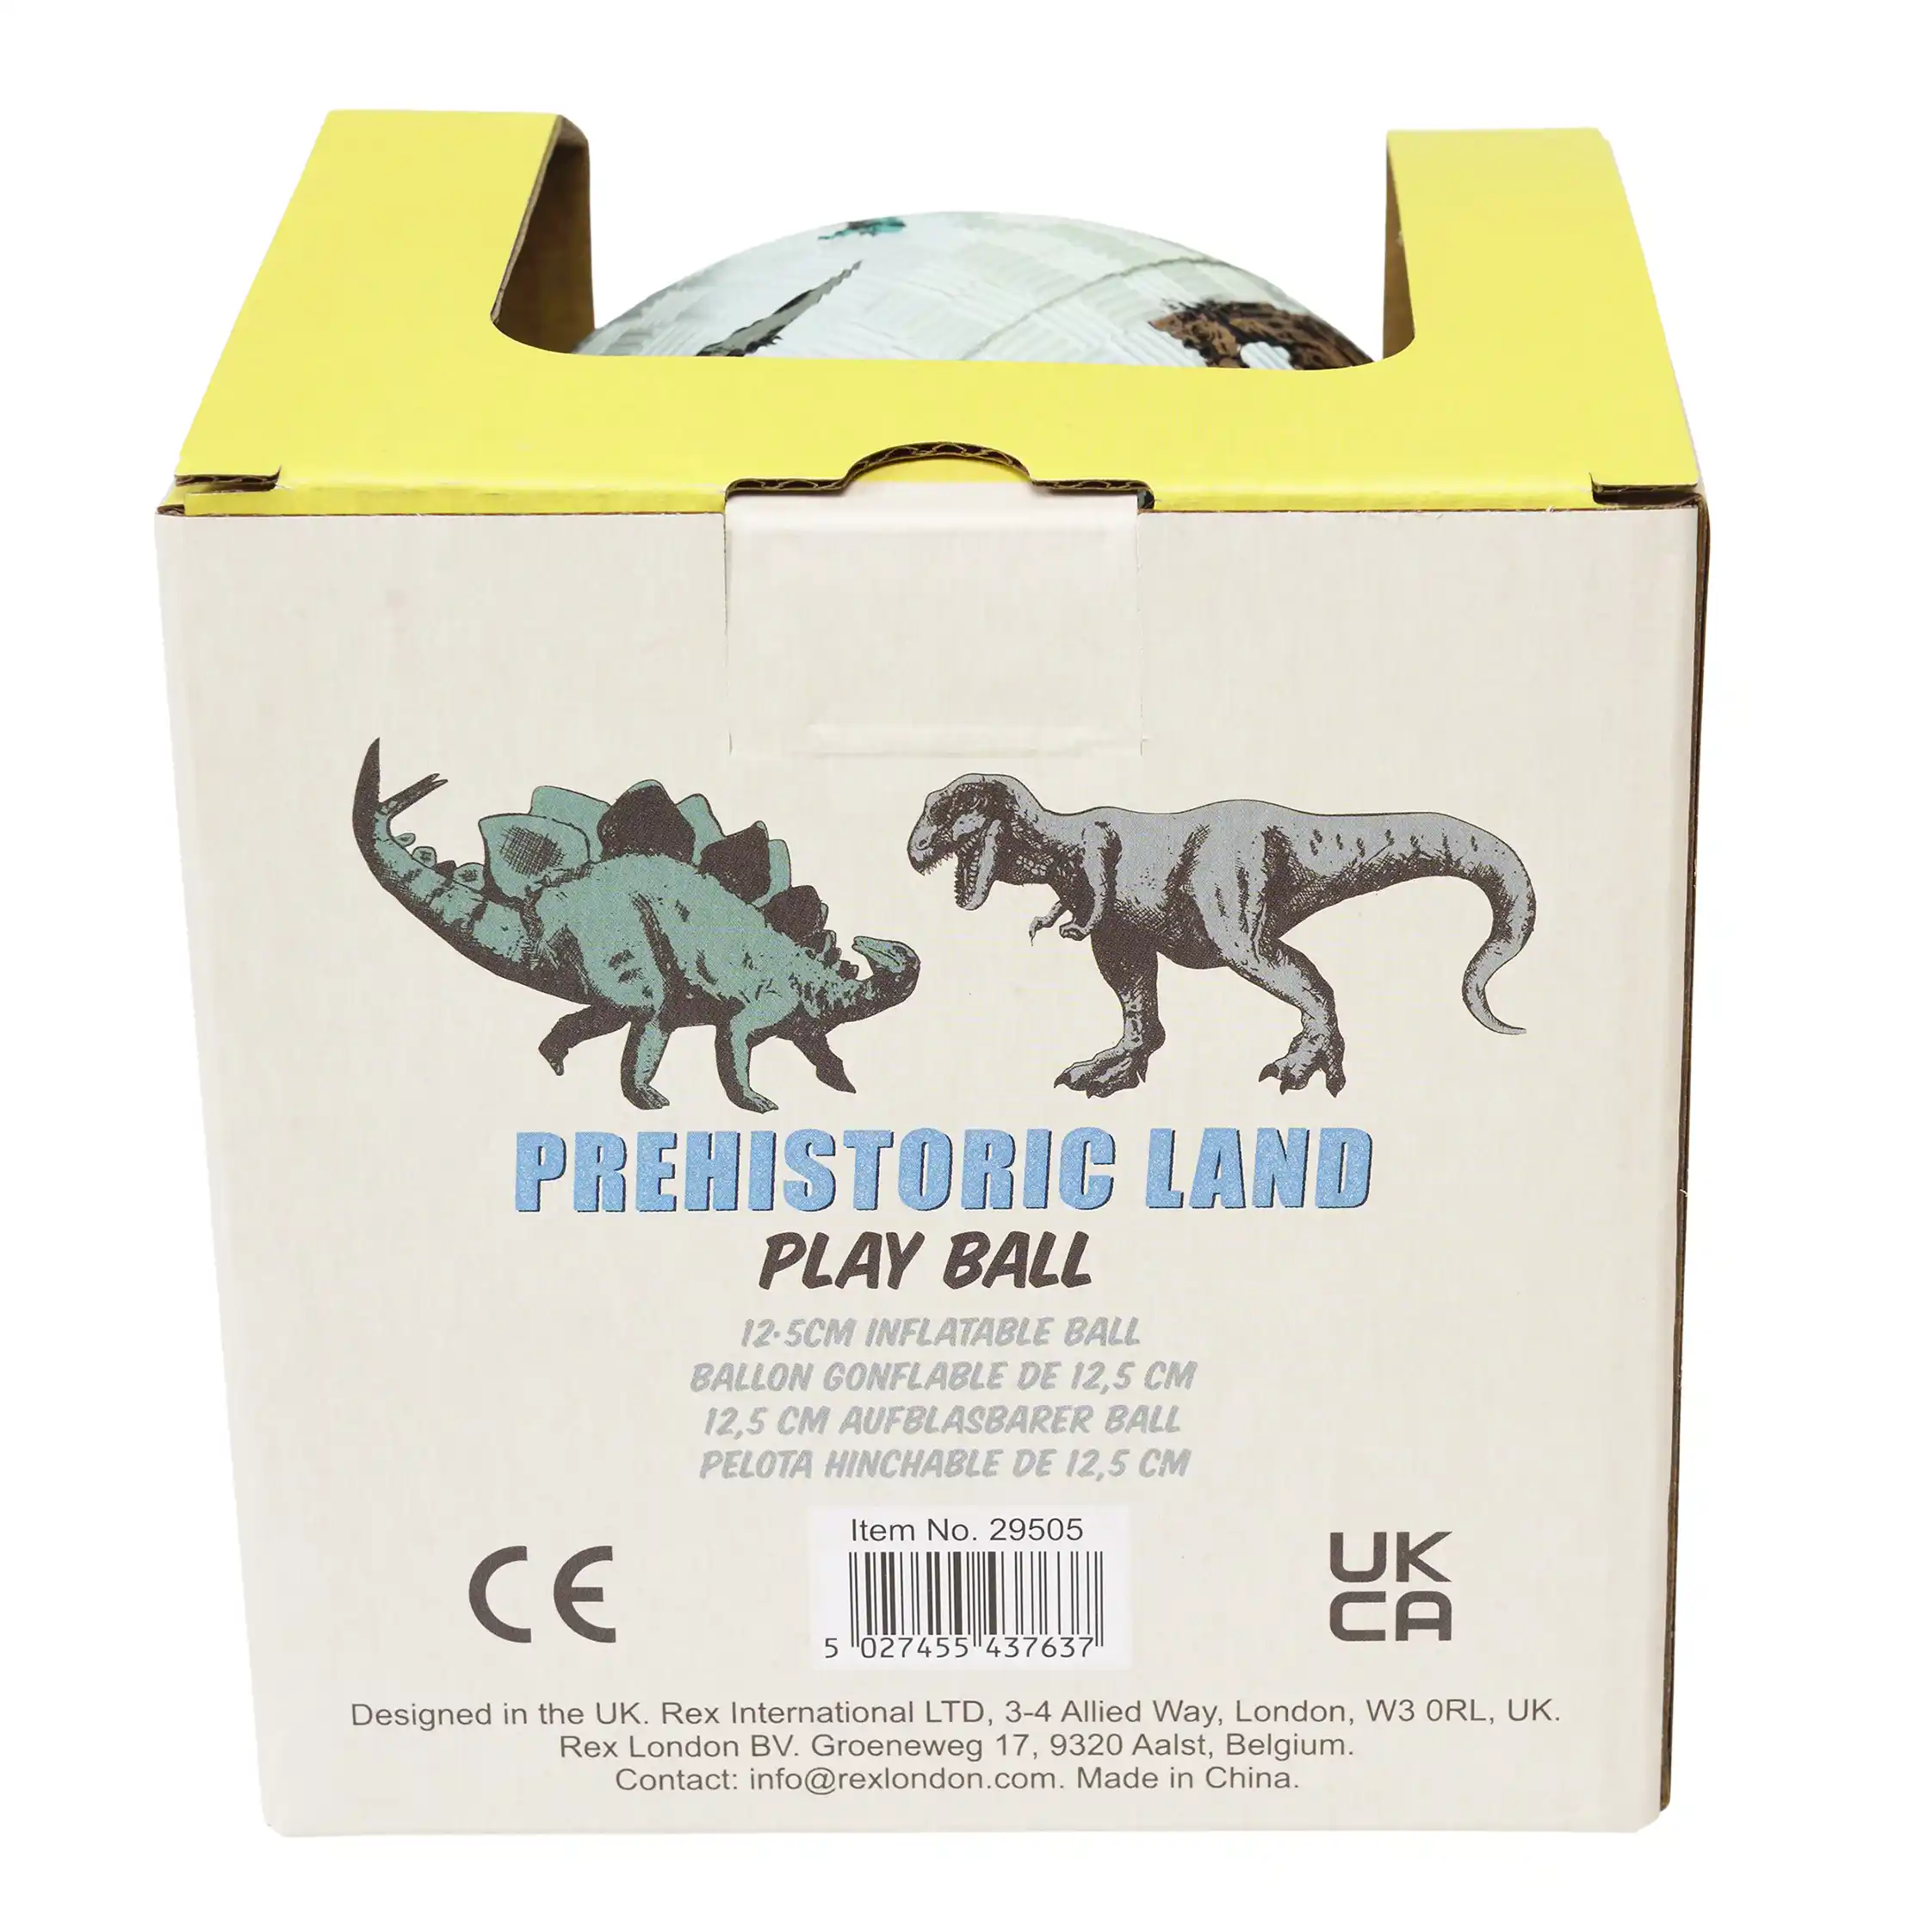 play ball - prehistoric land